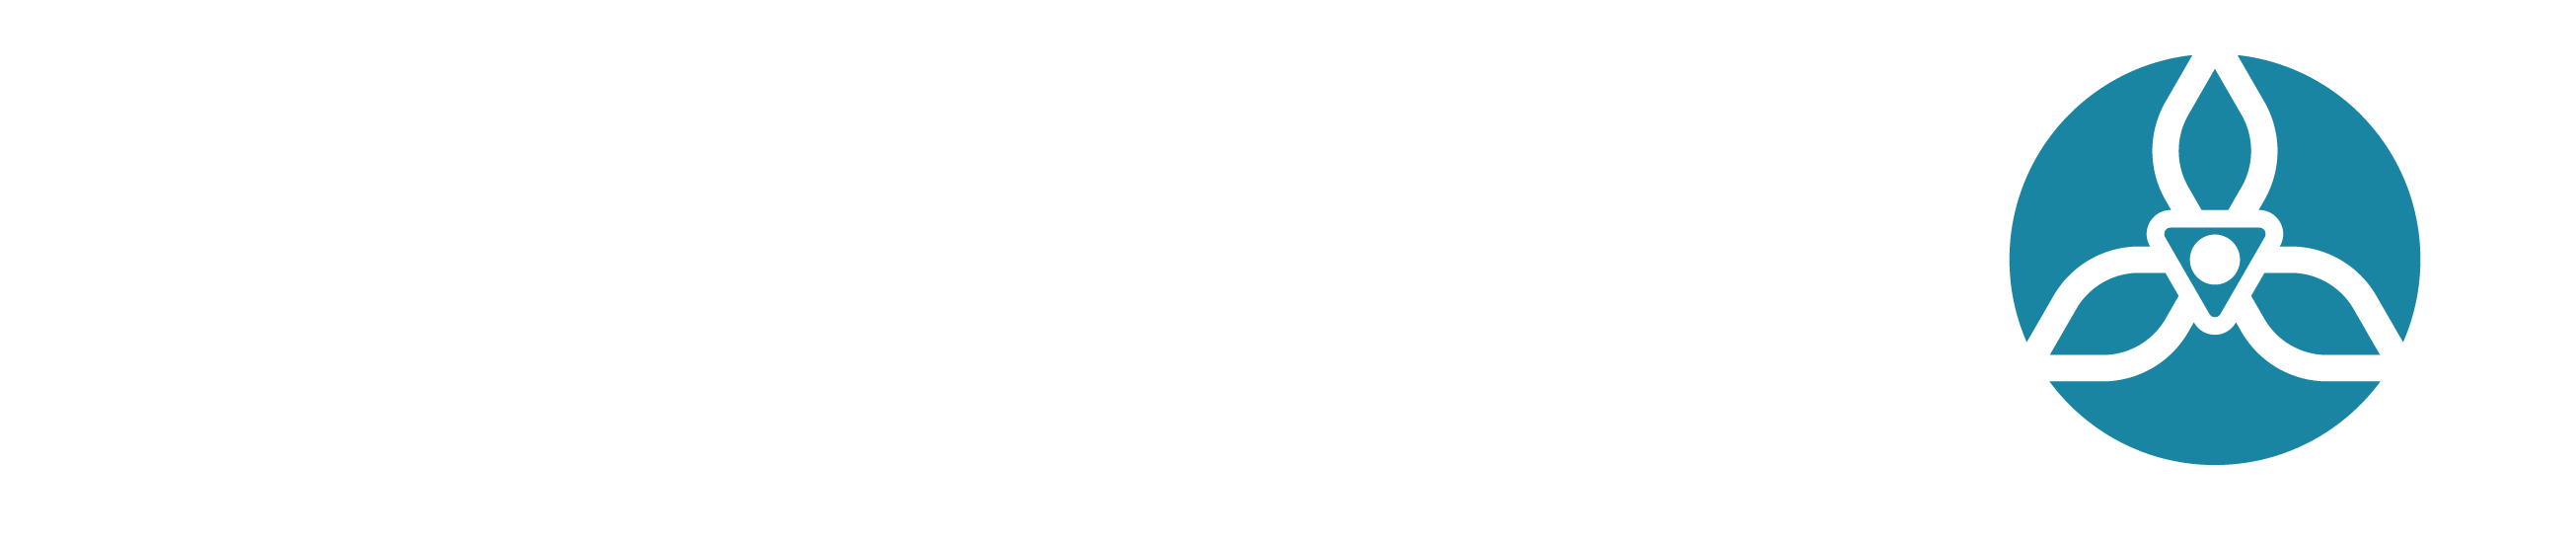 CS 06.09.2022 Comune di Treviglio | TREVIGLIO, SEMPRE PIÙ ATTRATTIVA, DIVENTA CAPITALE DELLA BASSA CON SPORT, LIBRI E GASTRONOMIA.